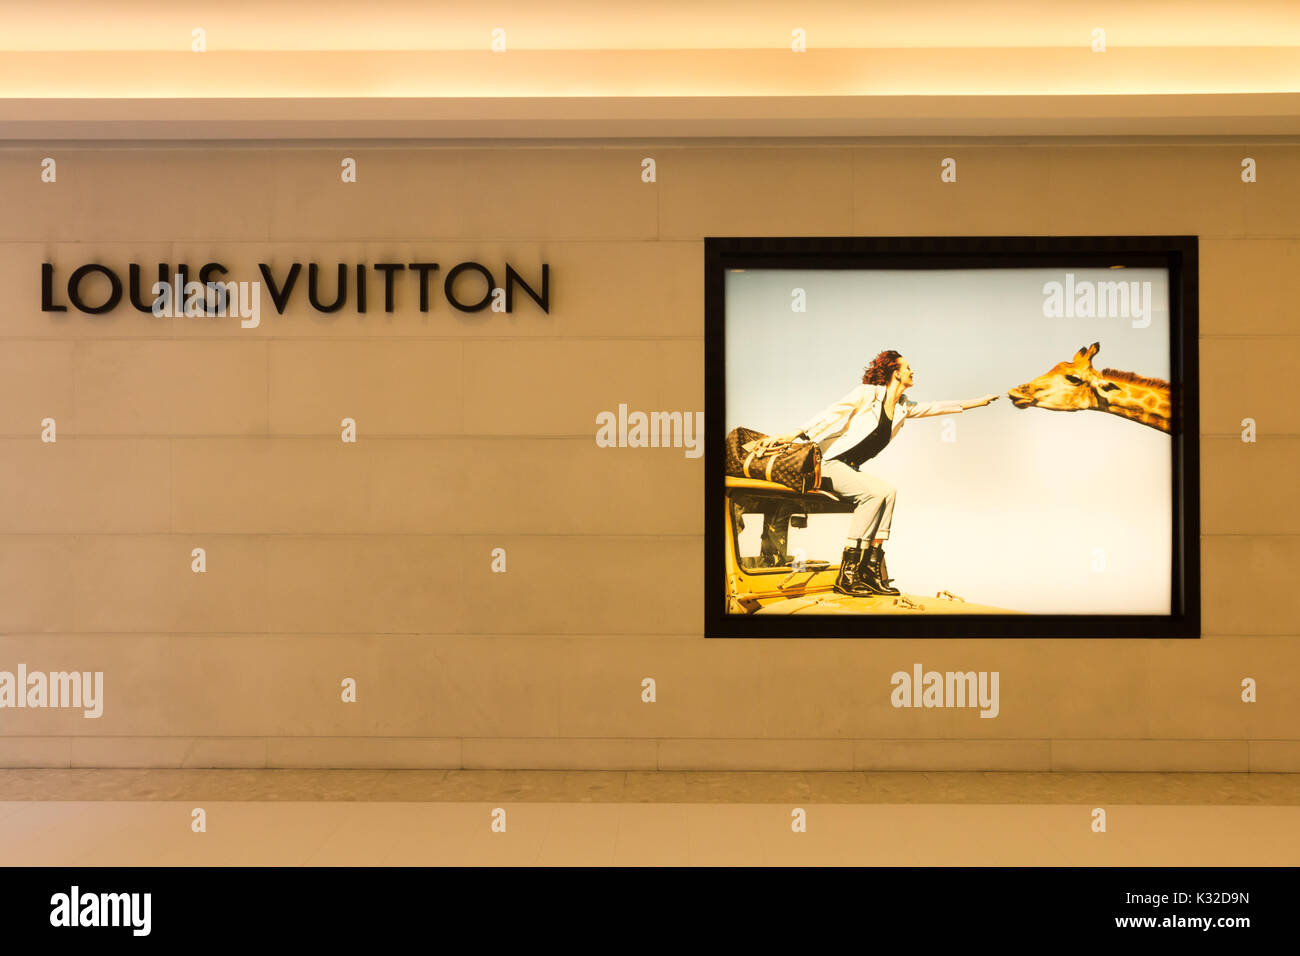 Louis Vuitton shop, Bangkok, Thailand Stock Photo: 156791649 - Alamy